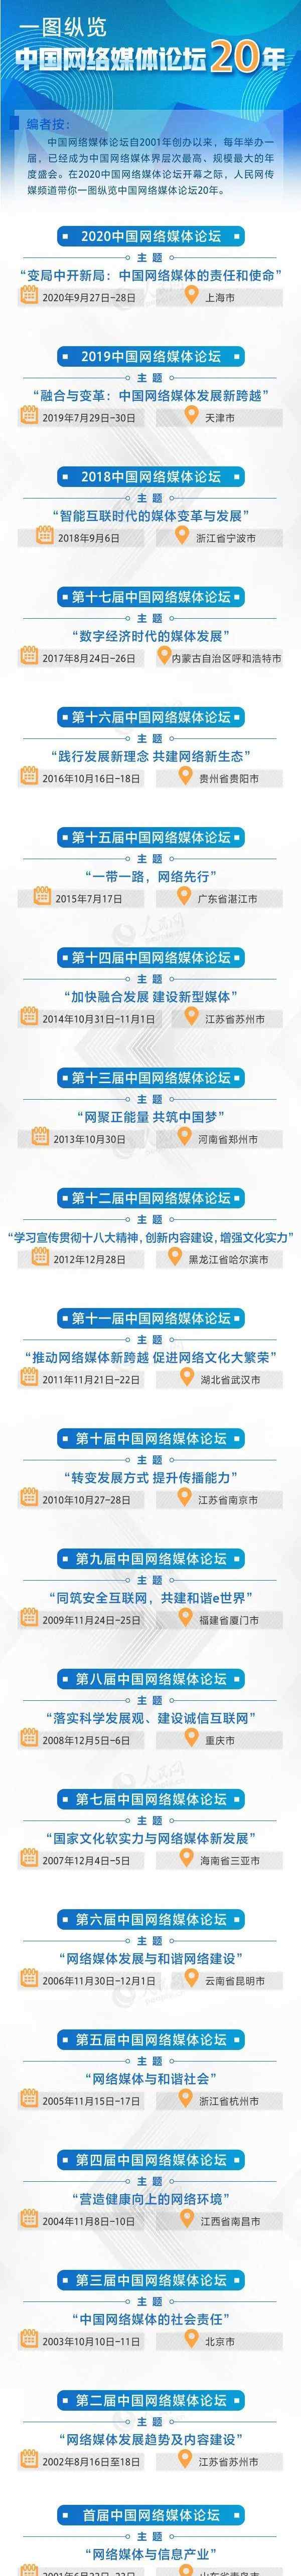 纵览中国 一图纵览中国网络媒体论坛20年